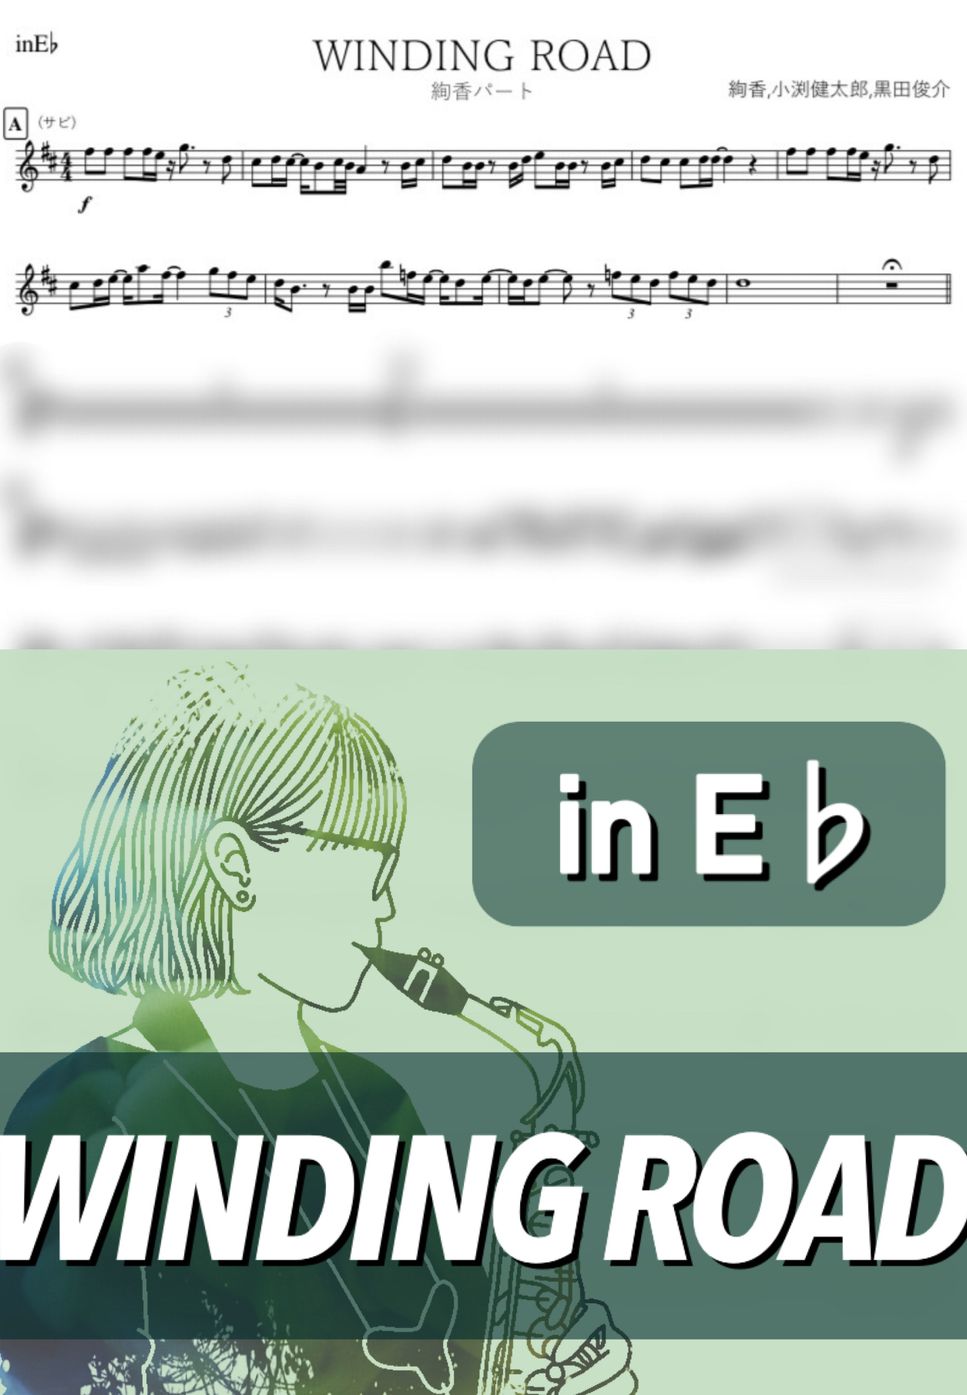 コブクロ×絢香 - WINDING ROAD (E♭) by kanamusic